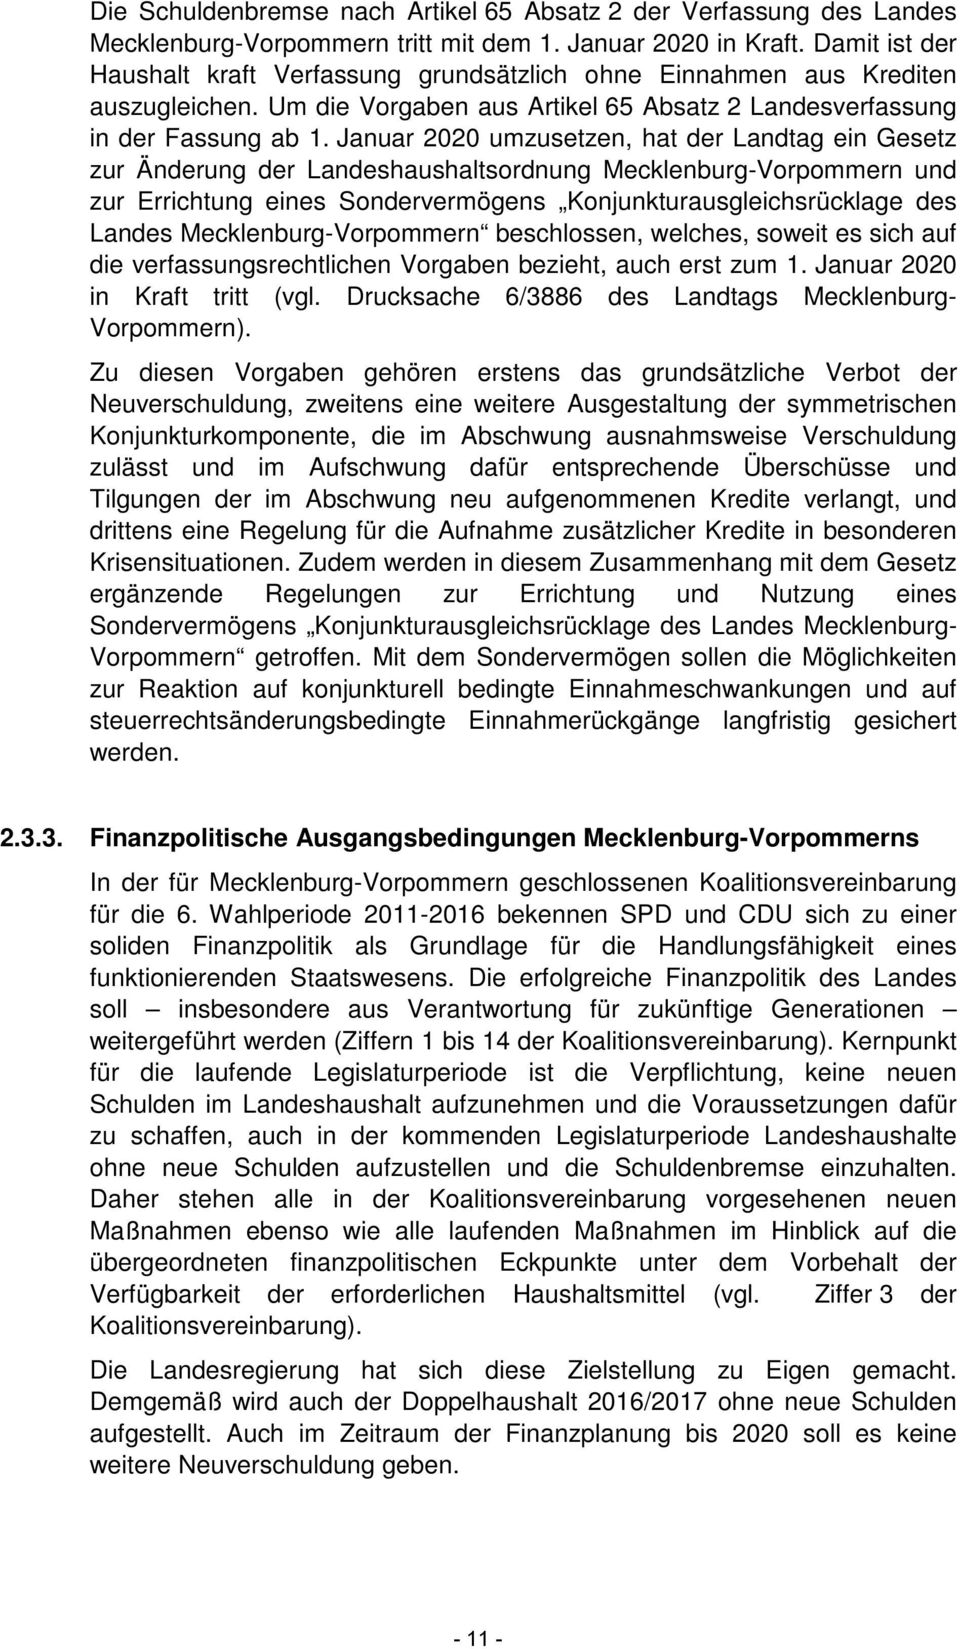 Januar 2020 umzusetzen, hat der Landtag ein Gesetz zur Änderung der Landeshaushaltsordnung Mecklenburg-Vorpommern und zur Errichtung eines Sondervermögens Konjunkturausgleichsrücklage des Landes